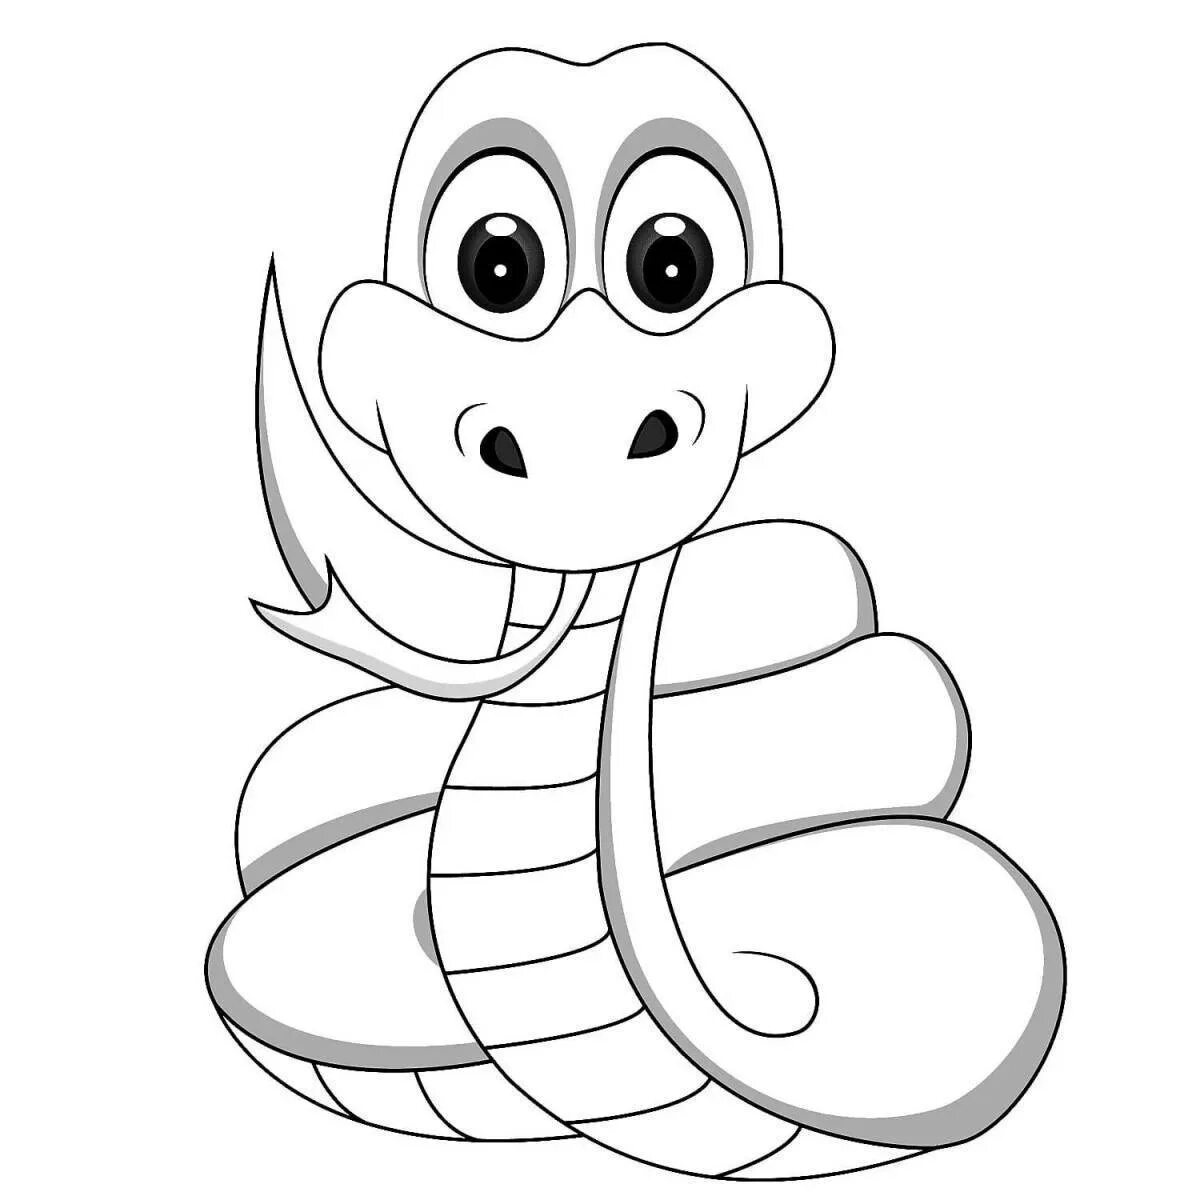 Змея раскраска. Змея раскраска для детей. Раскраска змеи для детей. Раскраска о змеях. Раскраска змей для детей